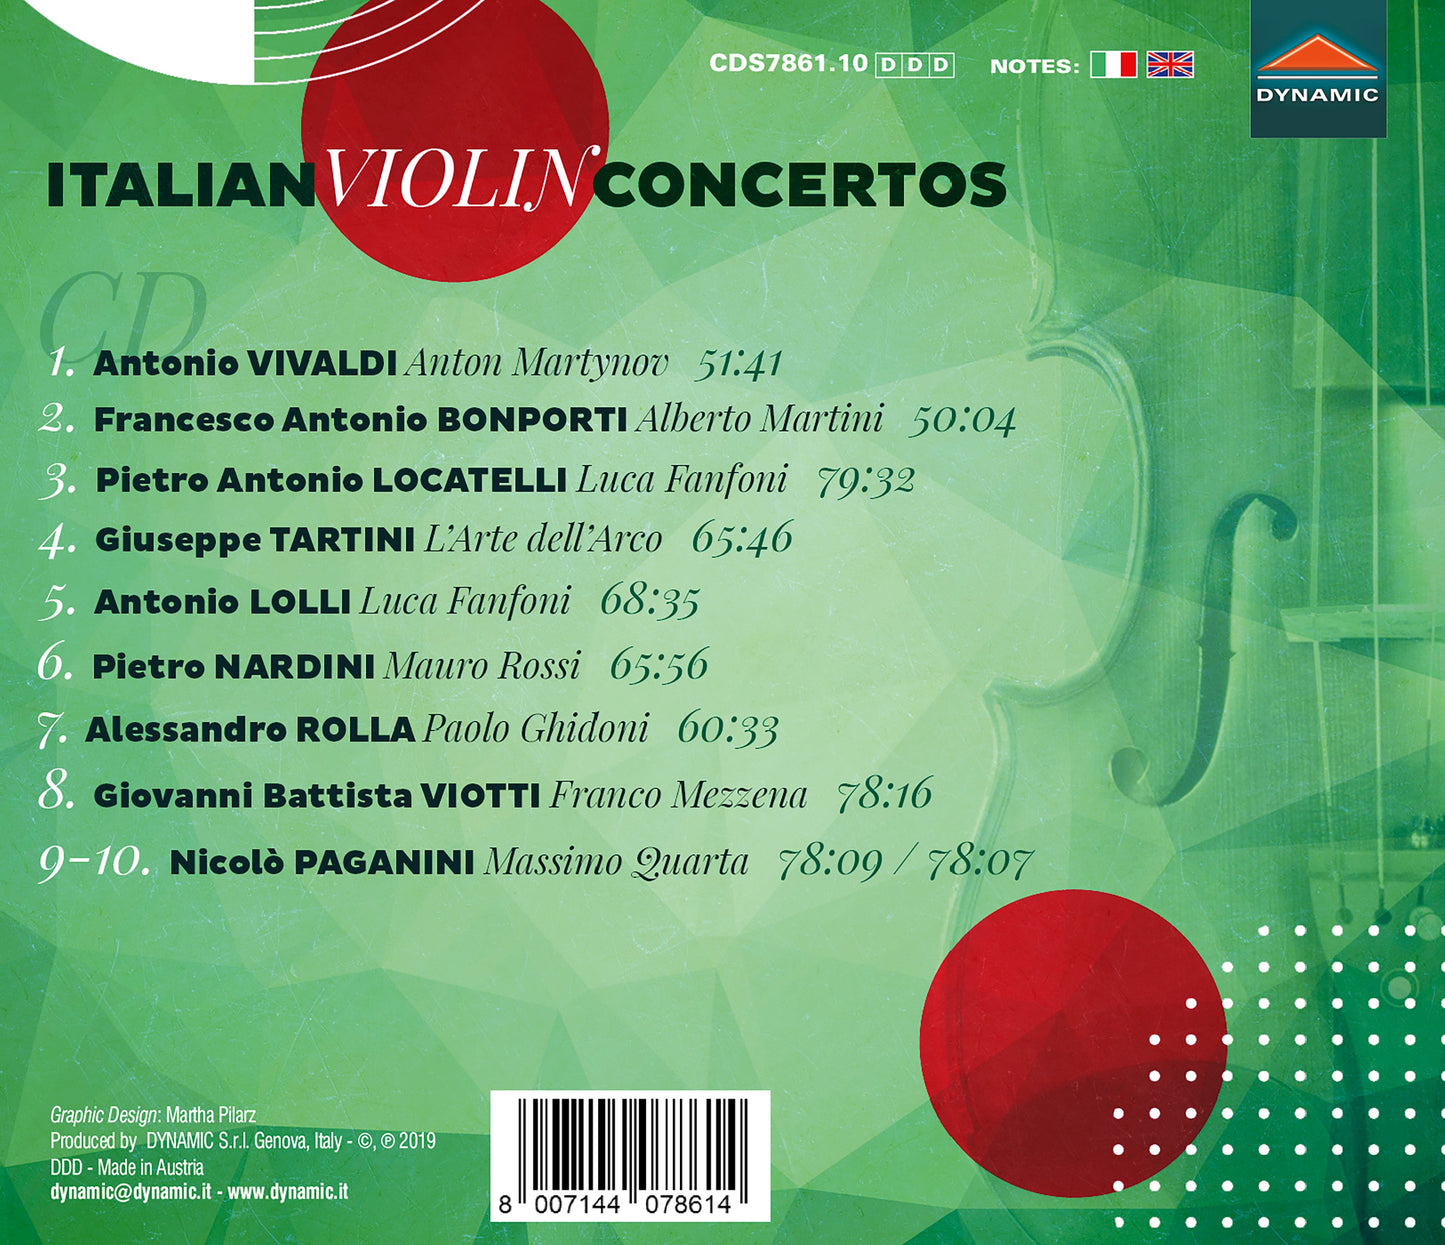 Antonio Vivaldi; Francesco Antonio Bonporti; Pietro Antonio